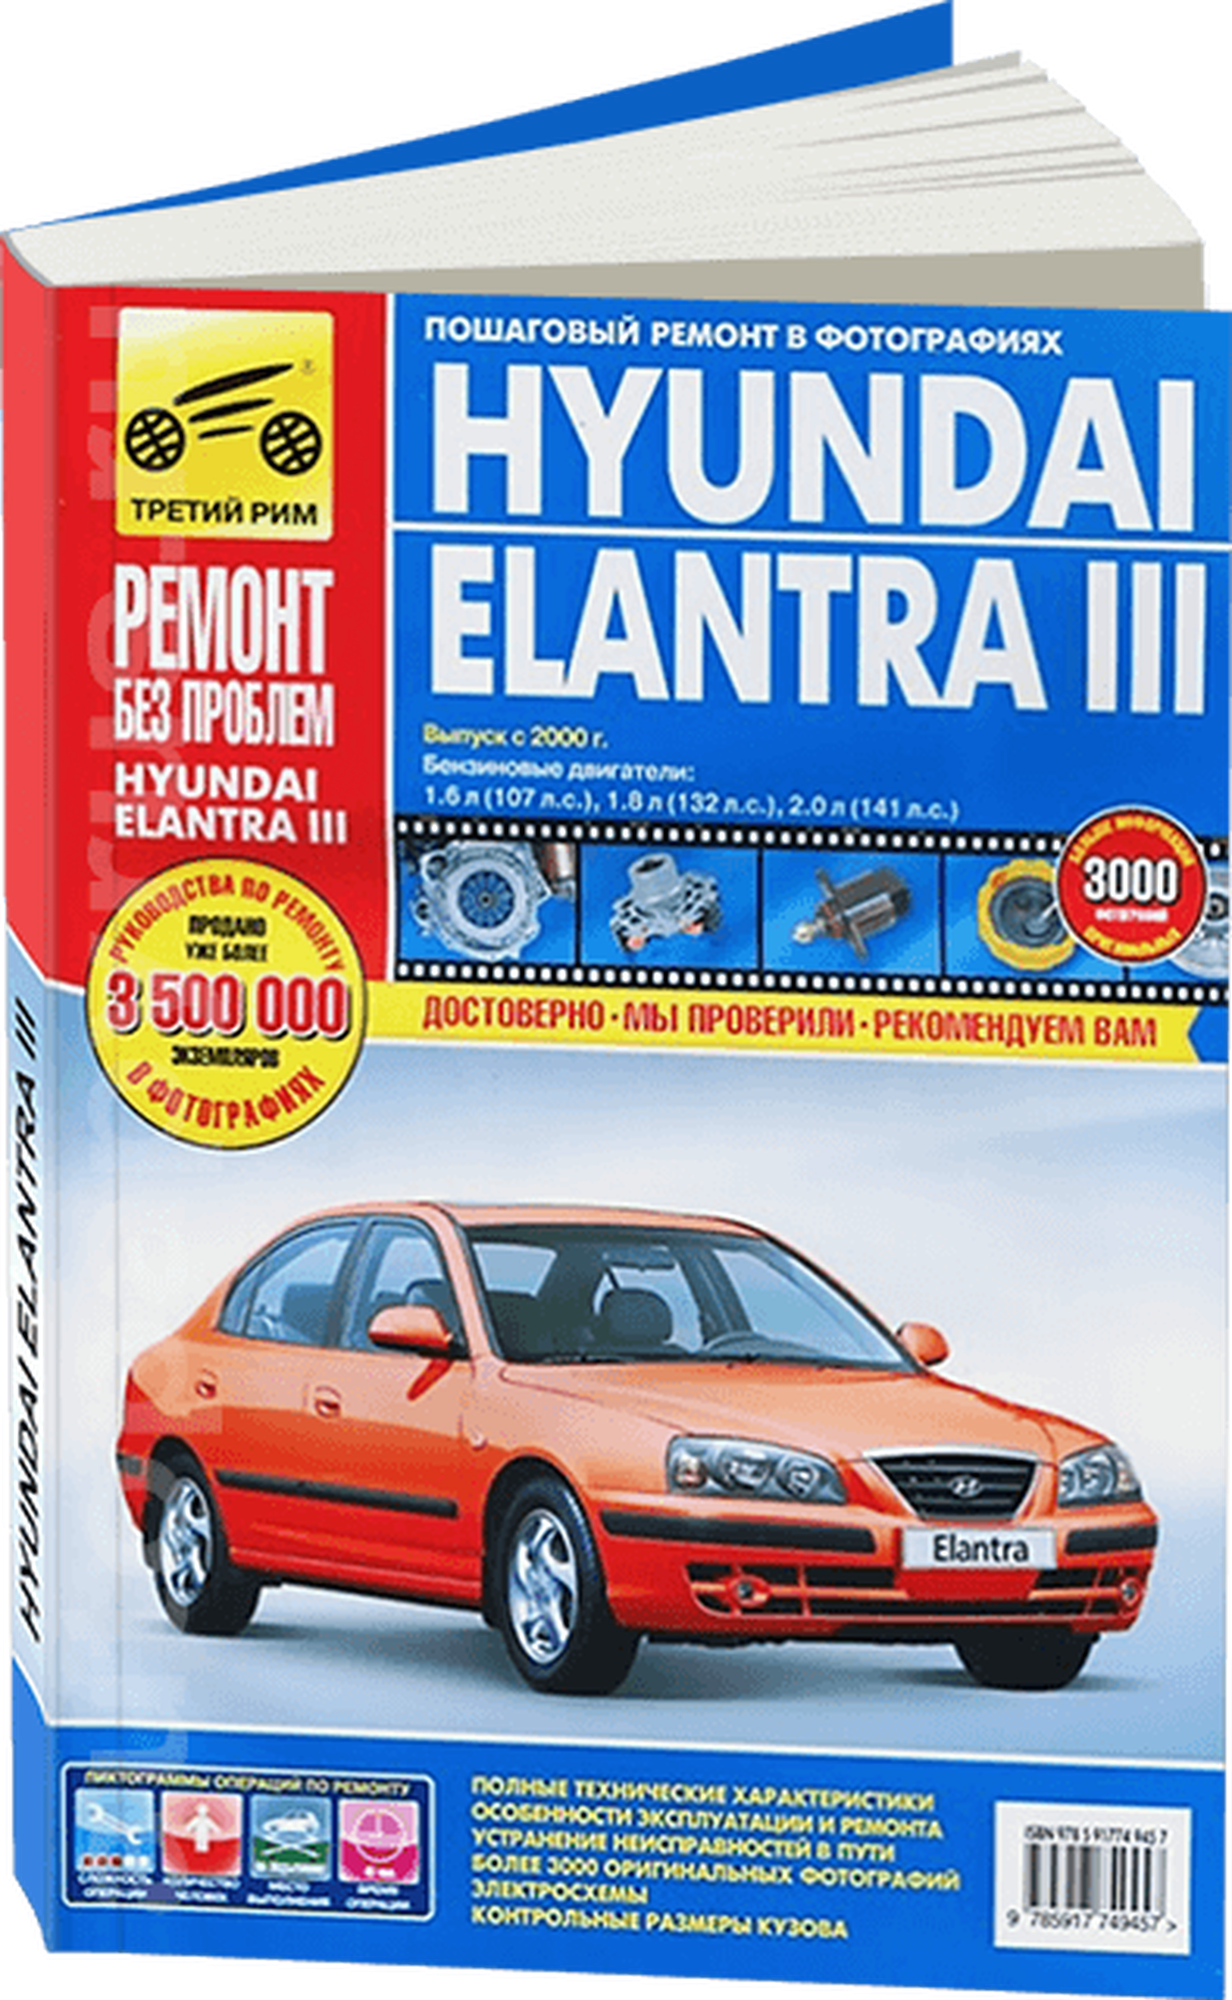 Титков М. В. "Hyundai Elantra III. Руководство по эксплуатации техническому обслуживанию и ремонту"